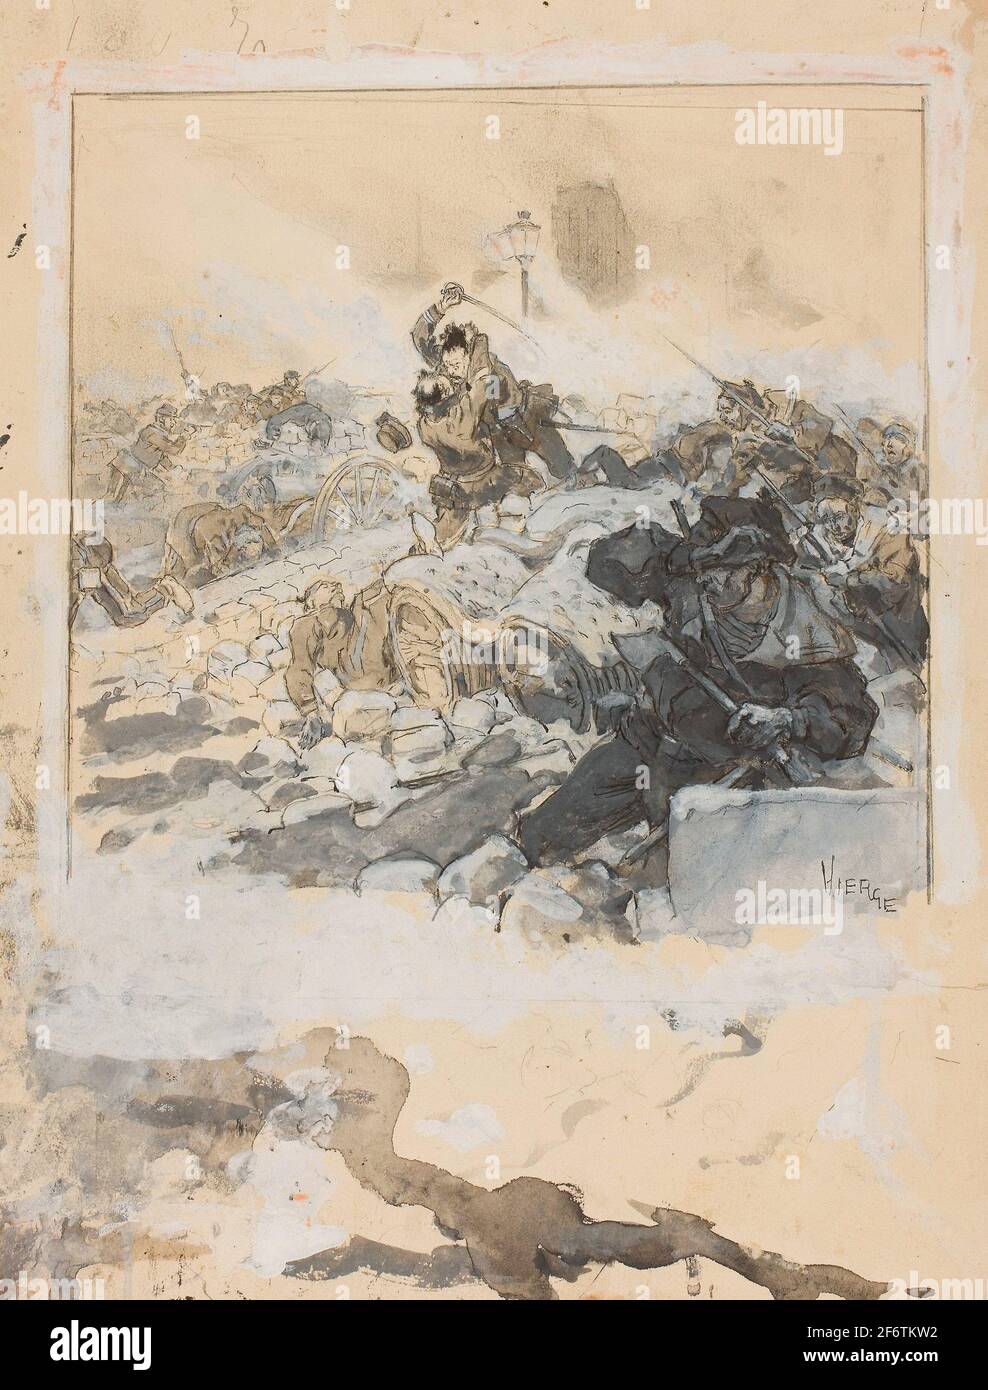 Autor: Daniel Urrabieta Vierge. Escena de la supresión de la Comuna de París en mayo de 1871 - c. 1871 - Daniel Urrabieta Vierge Francés, nacido en España, Foto de stock